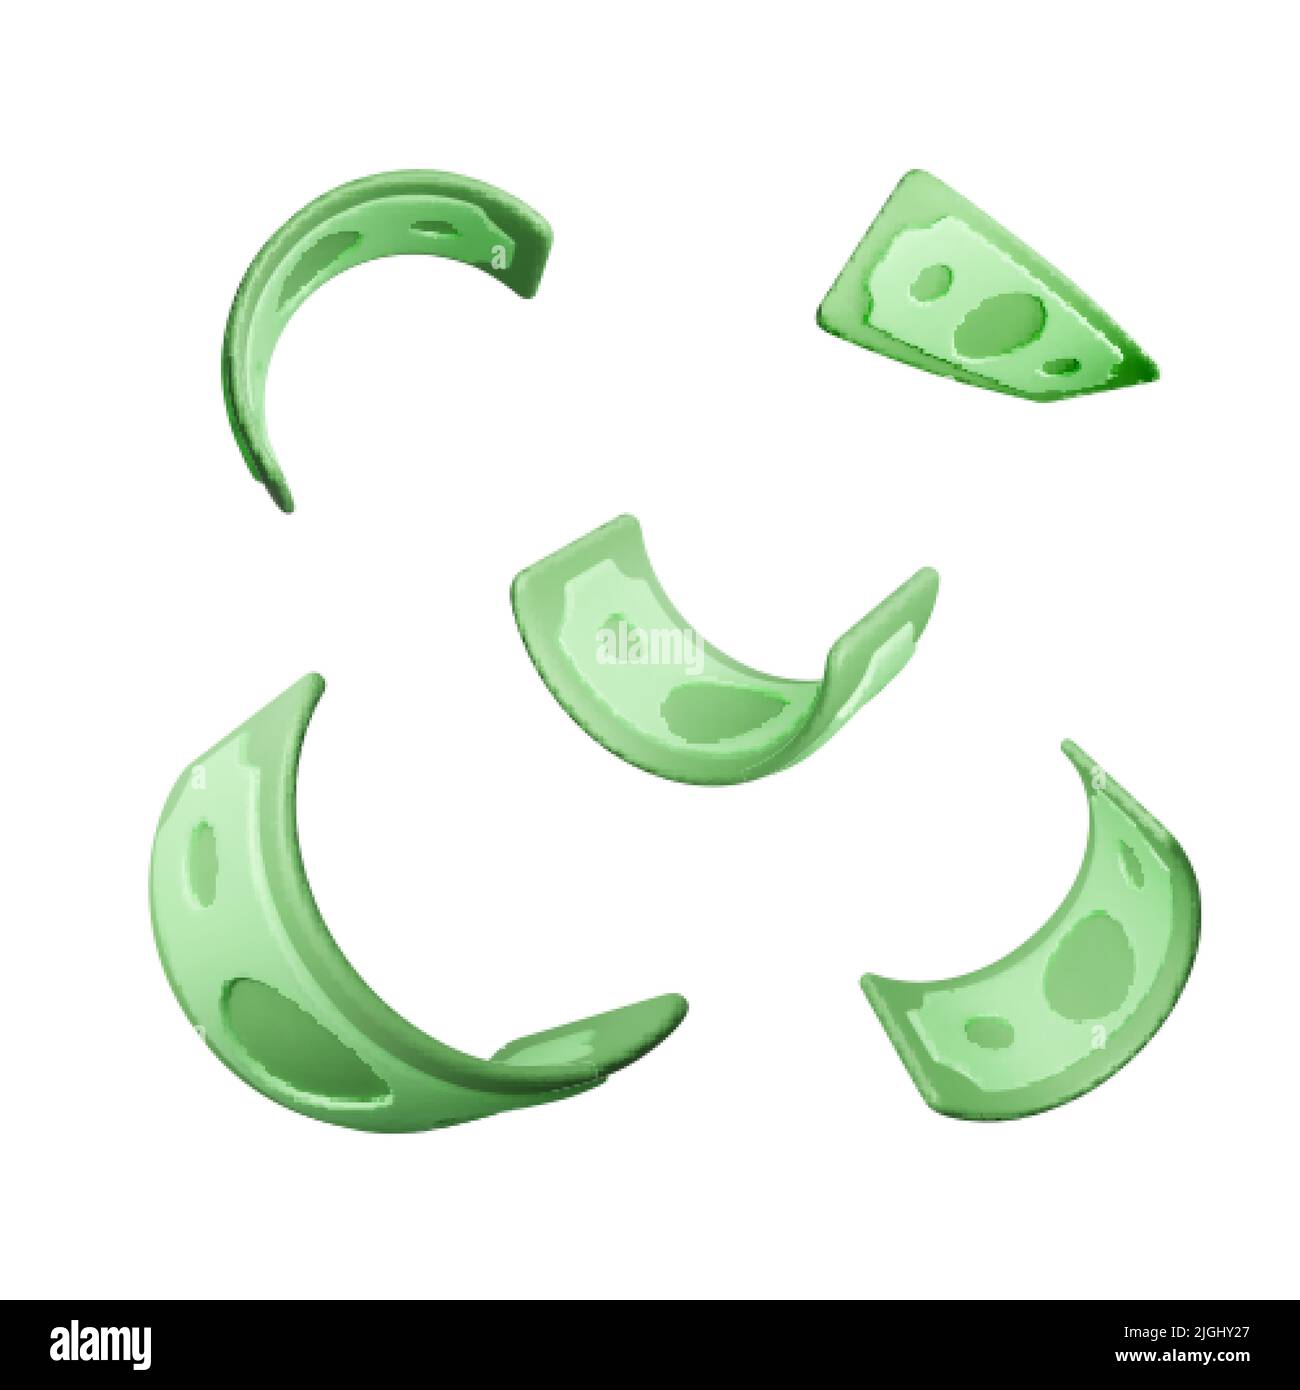 Satz von verdrehten grünen Papier Währung. Papiergeld im realistischen 3D-Stil. Verdrehter Dollarschein. Vektorgrafik Stock Vektor